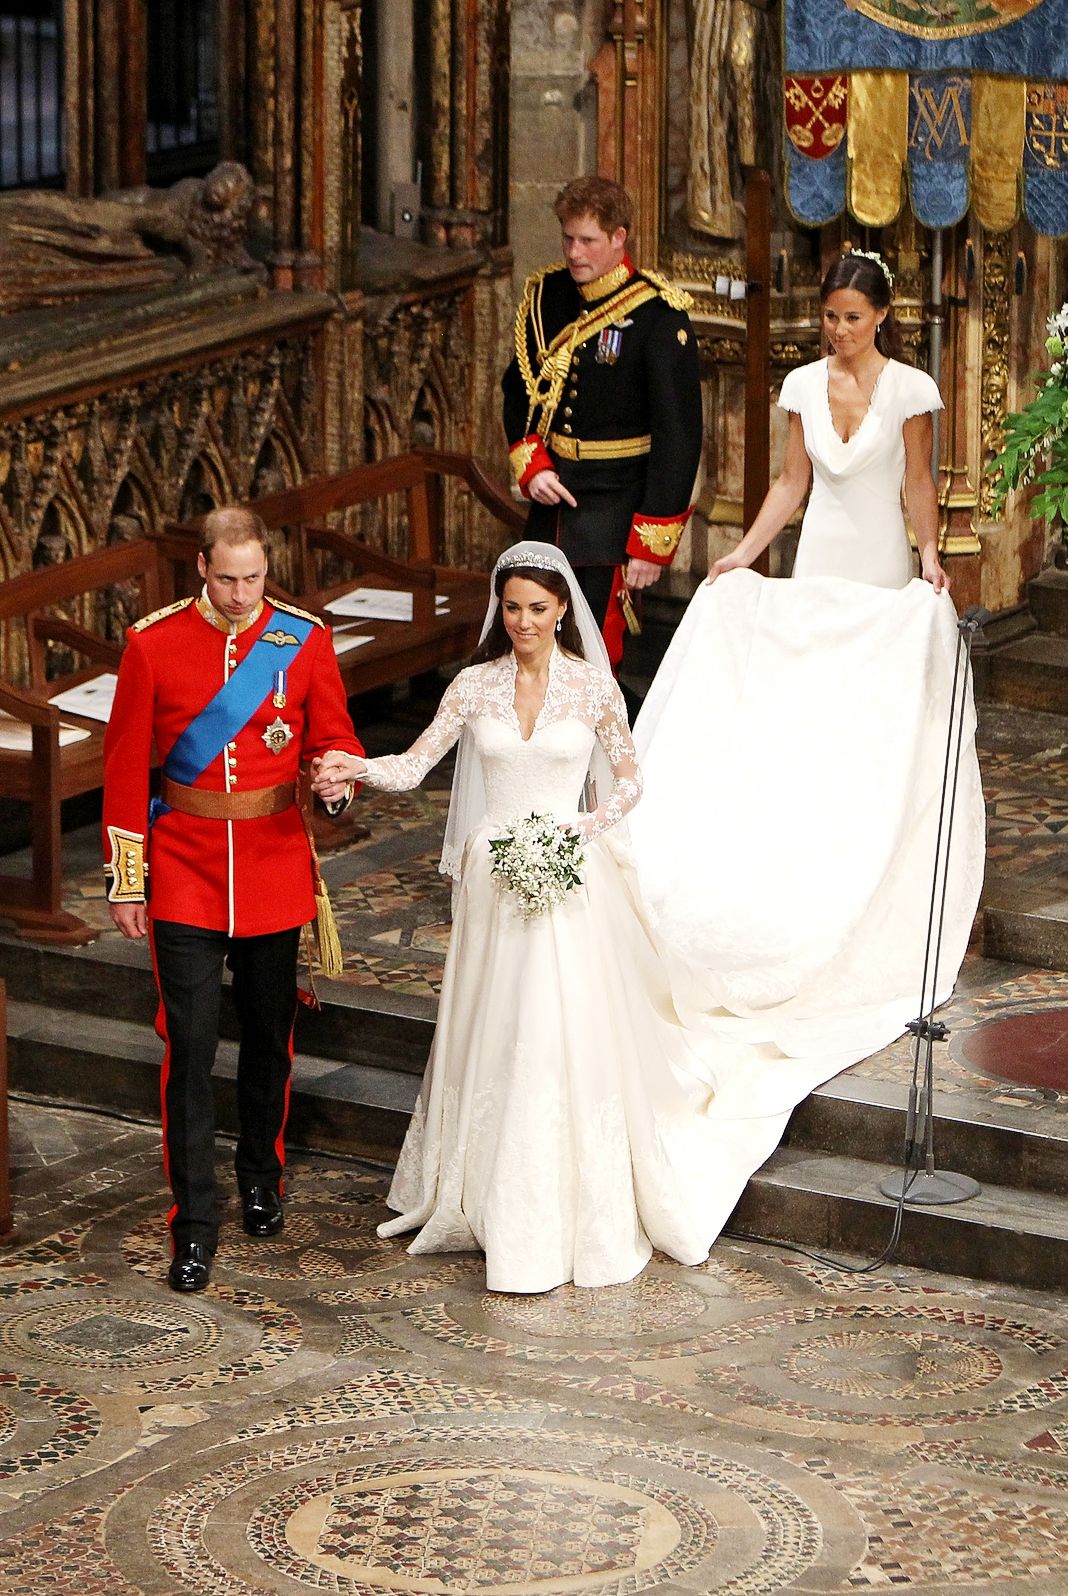 Принц Уильям и Кэтрин идут к алтарю, за ними идут шафер принц Гарри и фрейлина Пиппа Миддлтон на их свадебной церемонии